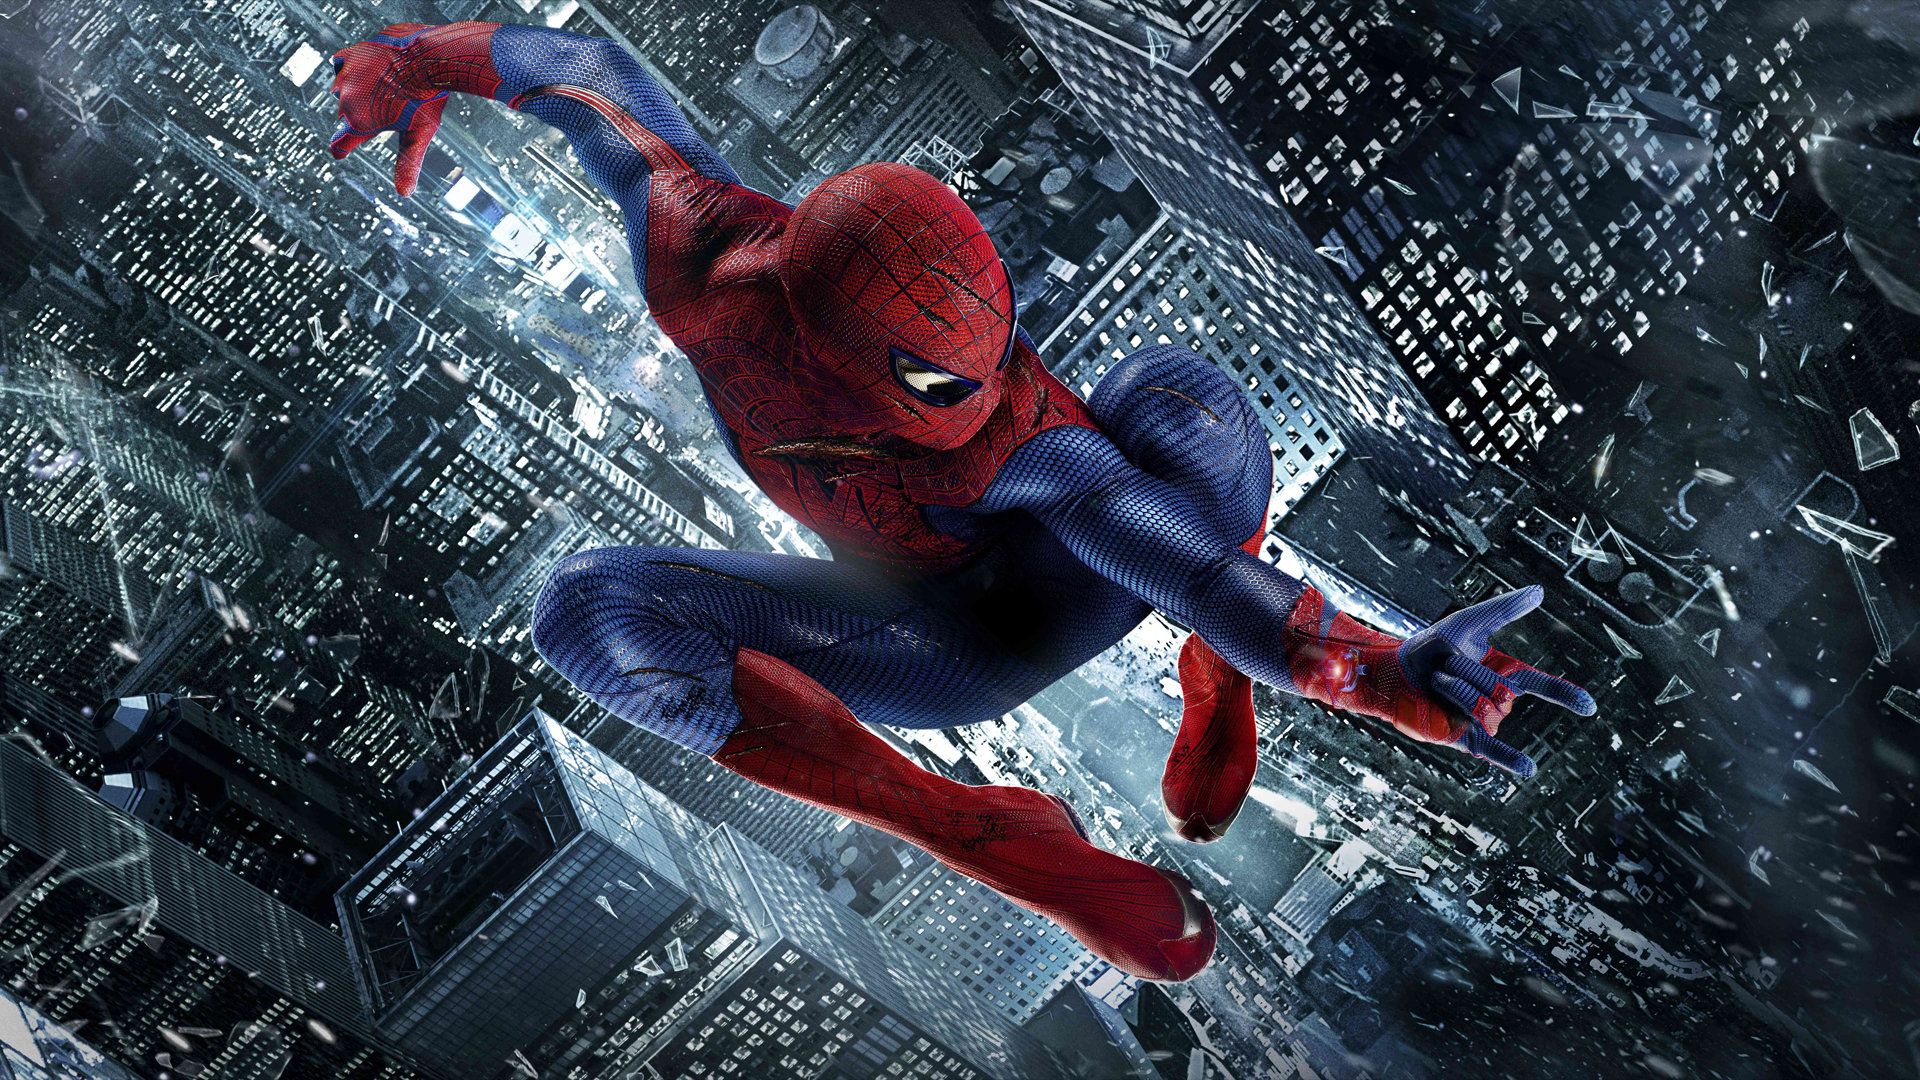 Spider Man Andrew Garfield The Amazing Spider Man Wallpaper